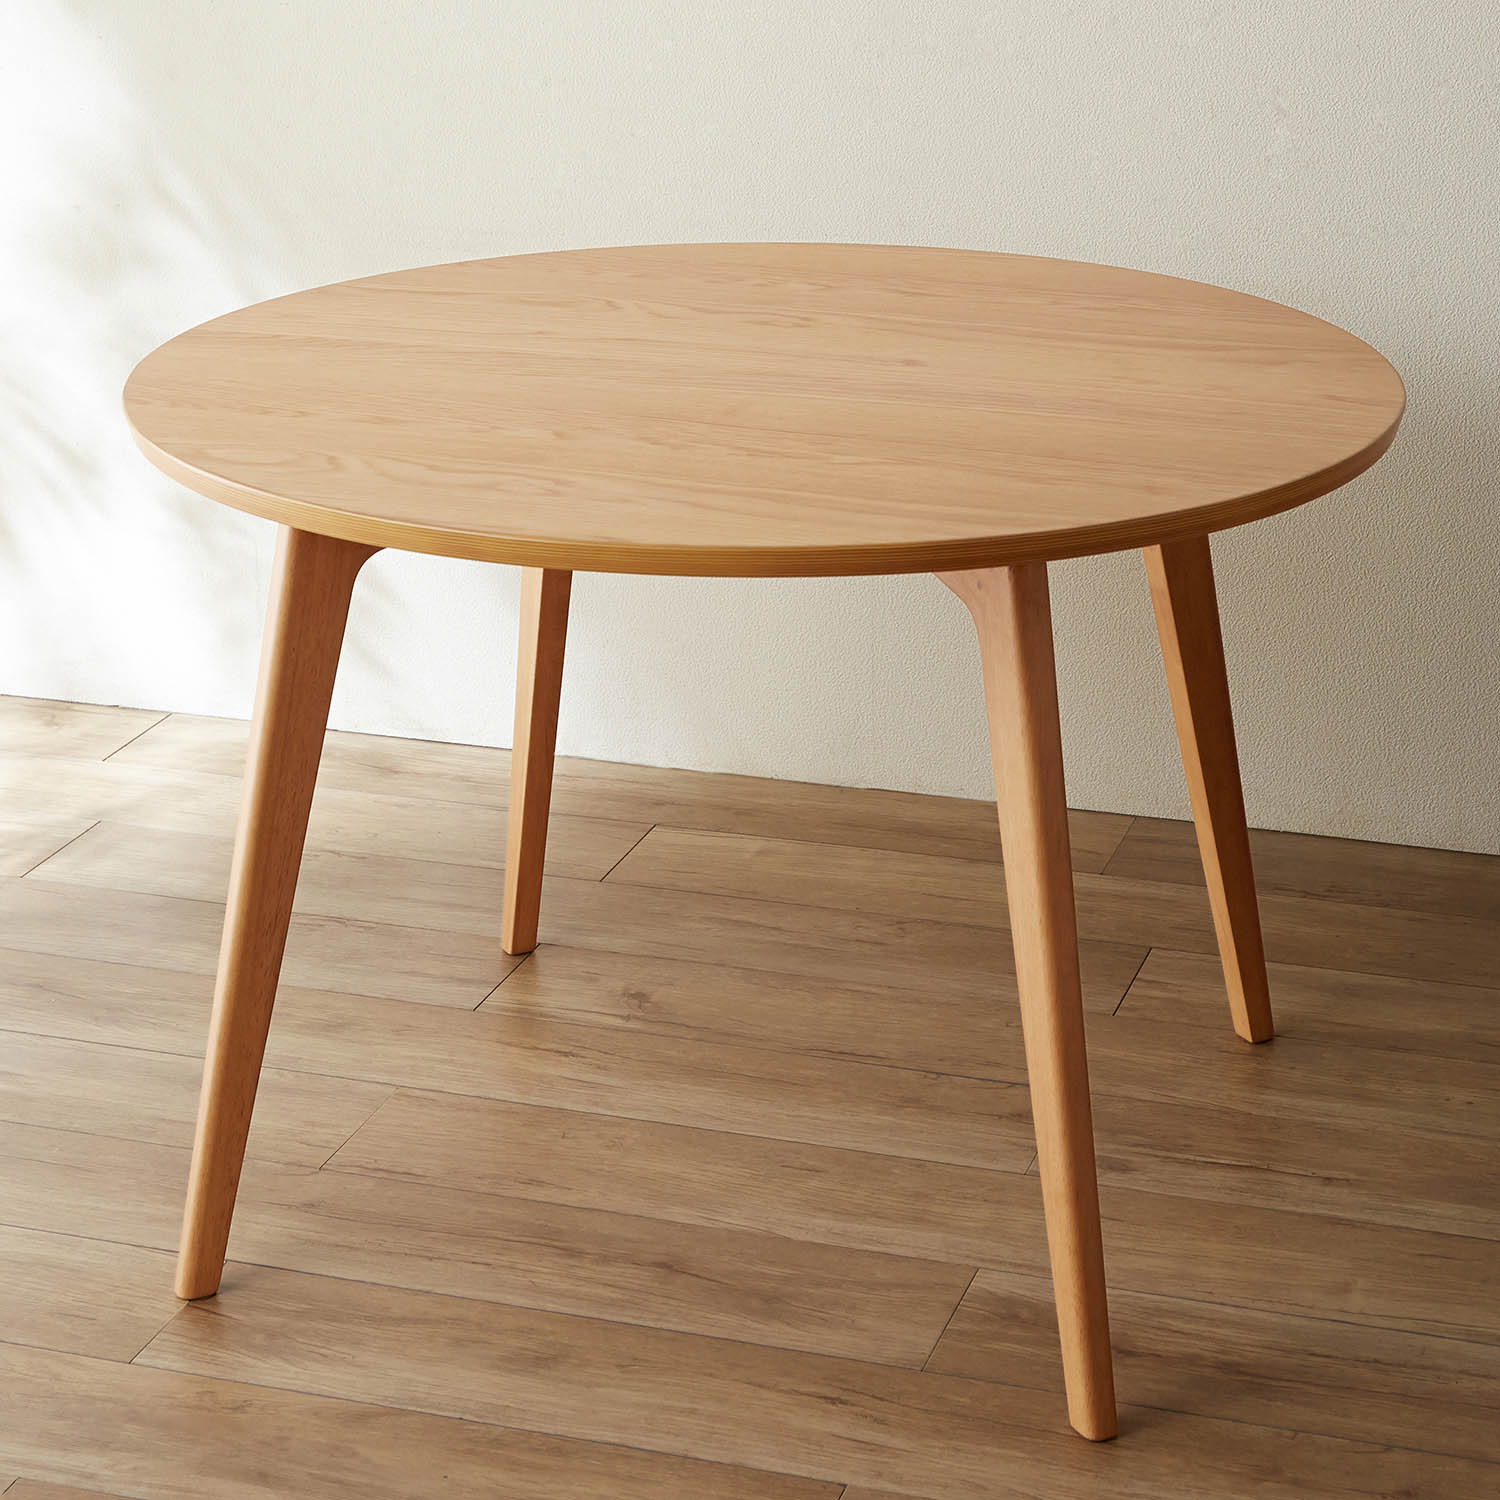 テーブル ダイニングテーブル 食卓 円卓 丸型 丸 丸テーブル 北欧 デザイン ダイニング 木目 天然木 シンプル ナチュラル サークル つくえ  おしゃれ 新生活